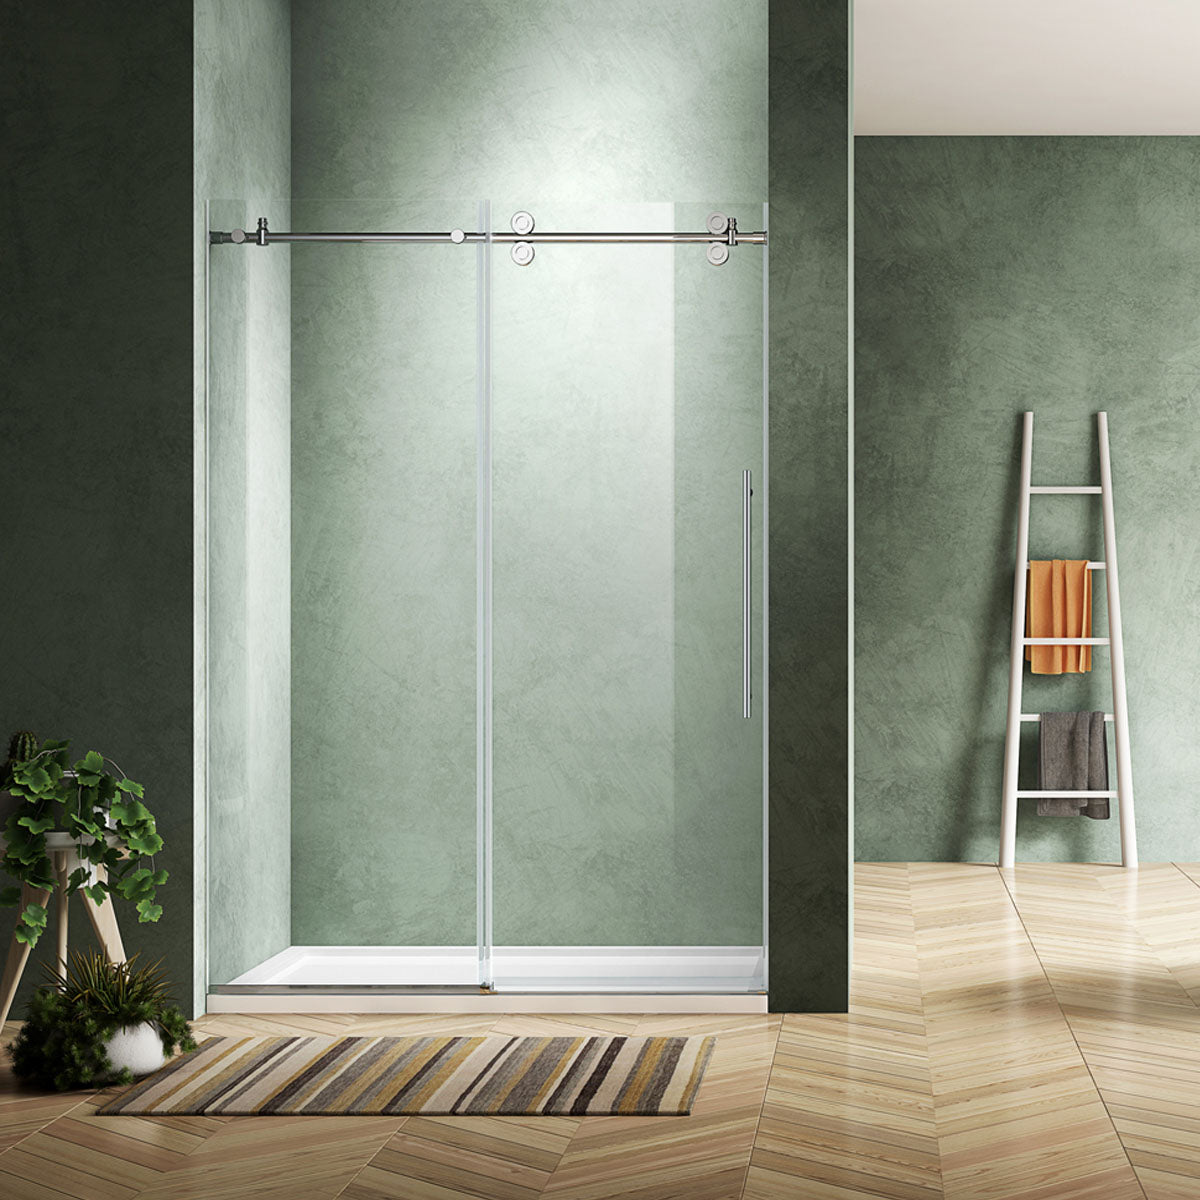 60" BH Series Frameless Single Sliding Shower Door (Chrome)